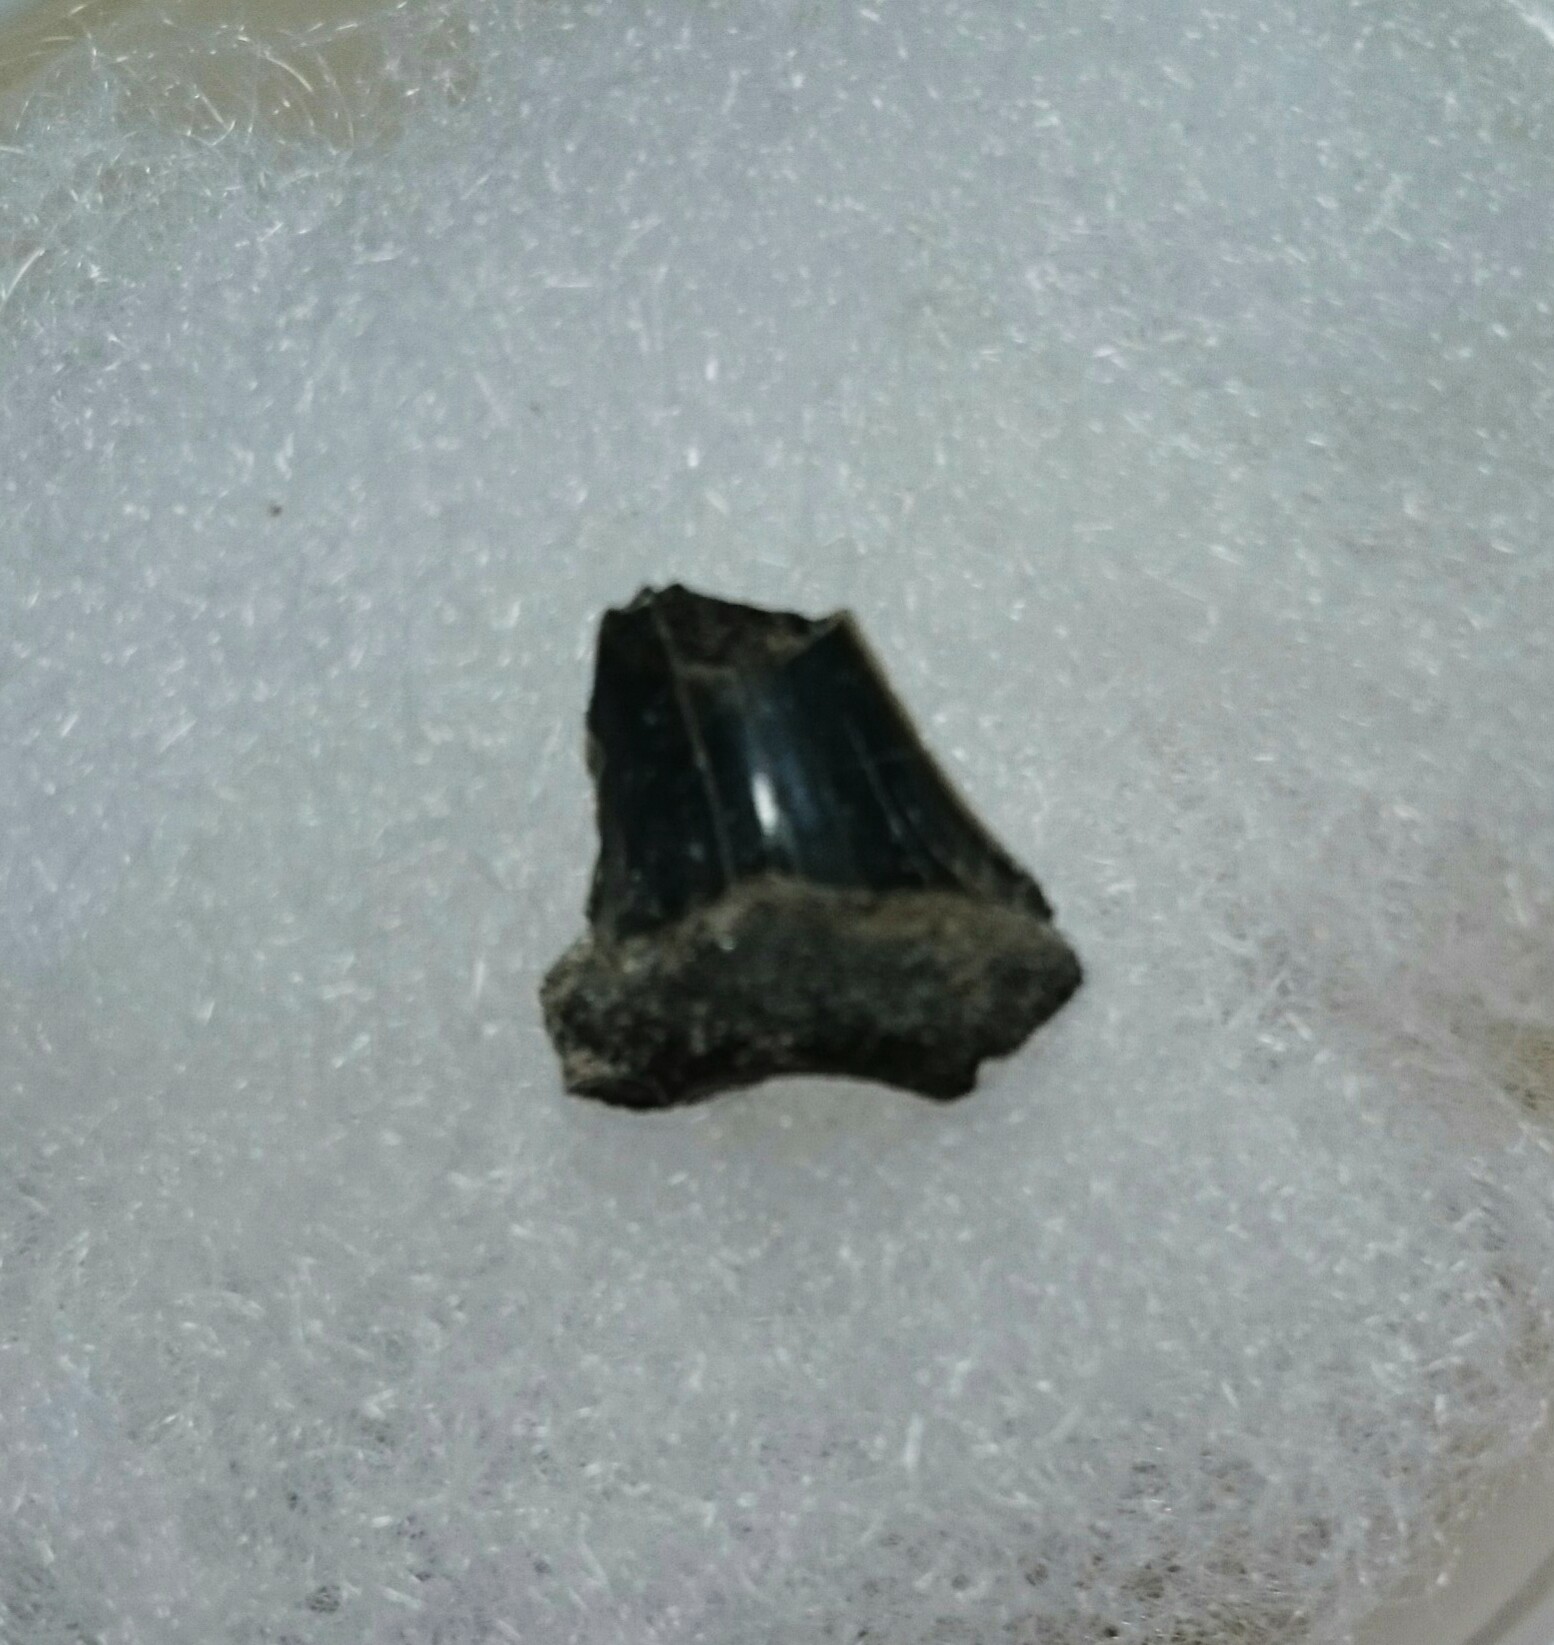 サメの歯の化石